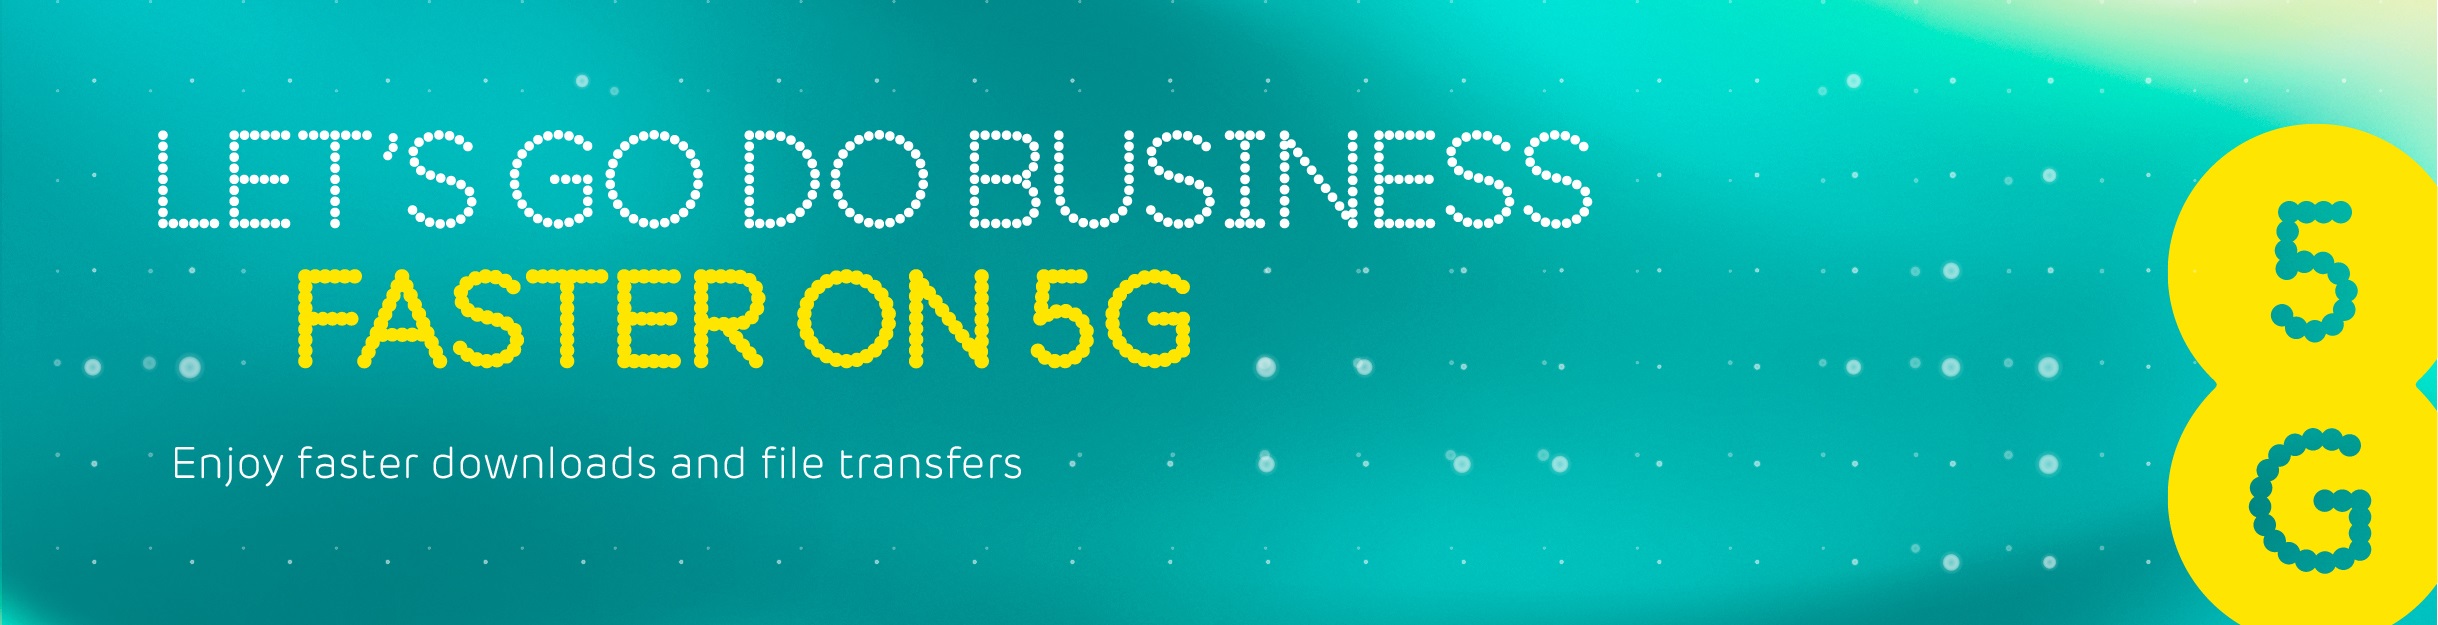 Let's do good business faster on 5G - Web banner.jpg